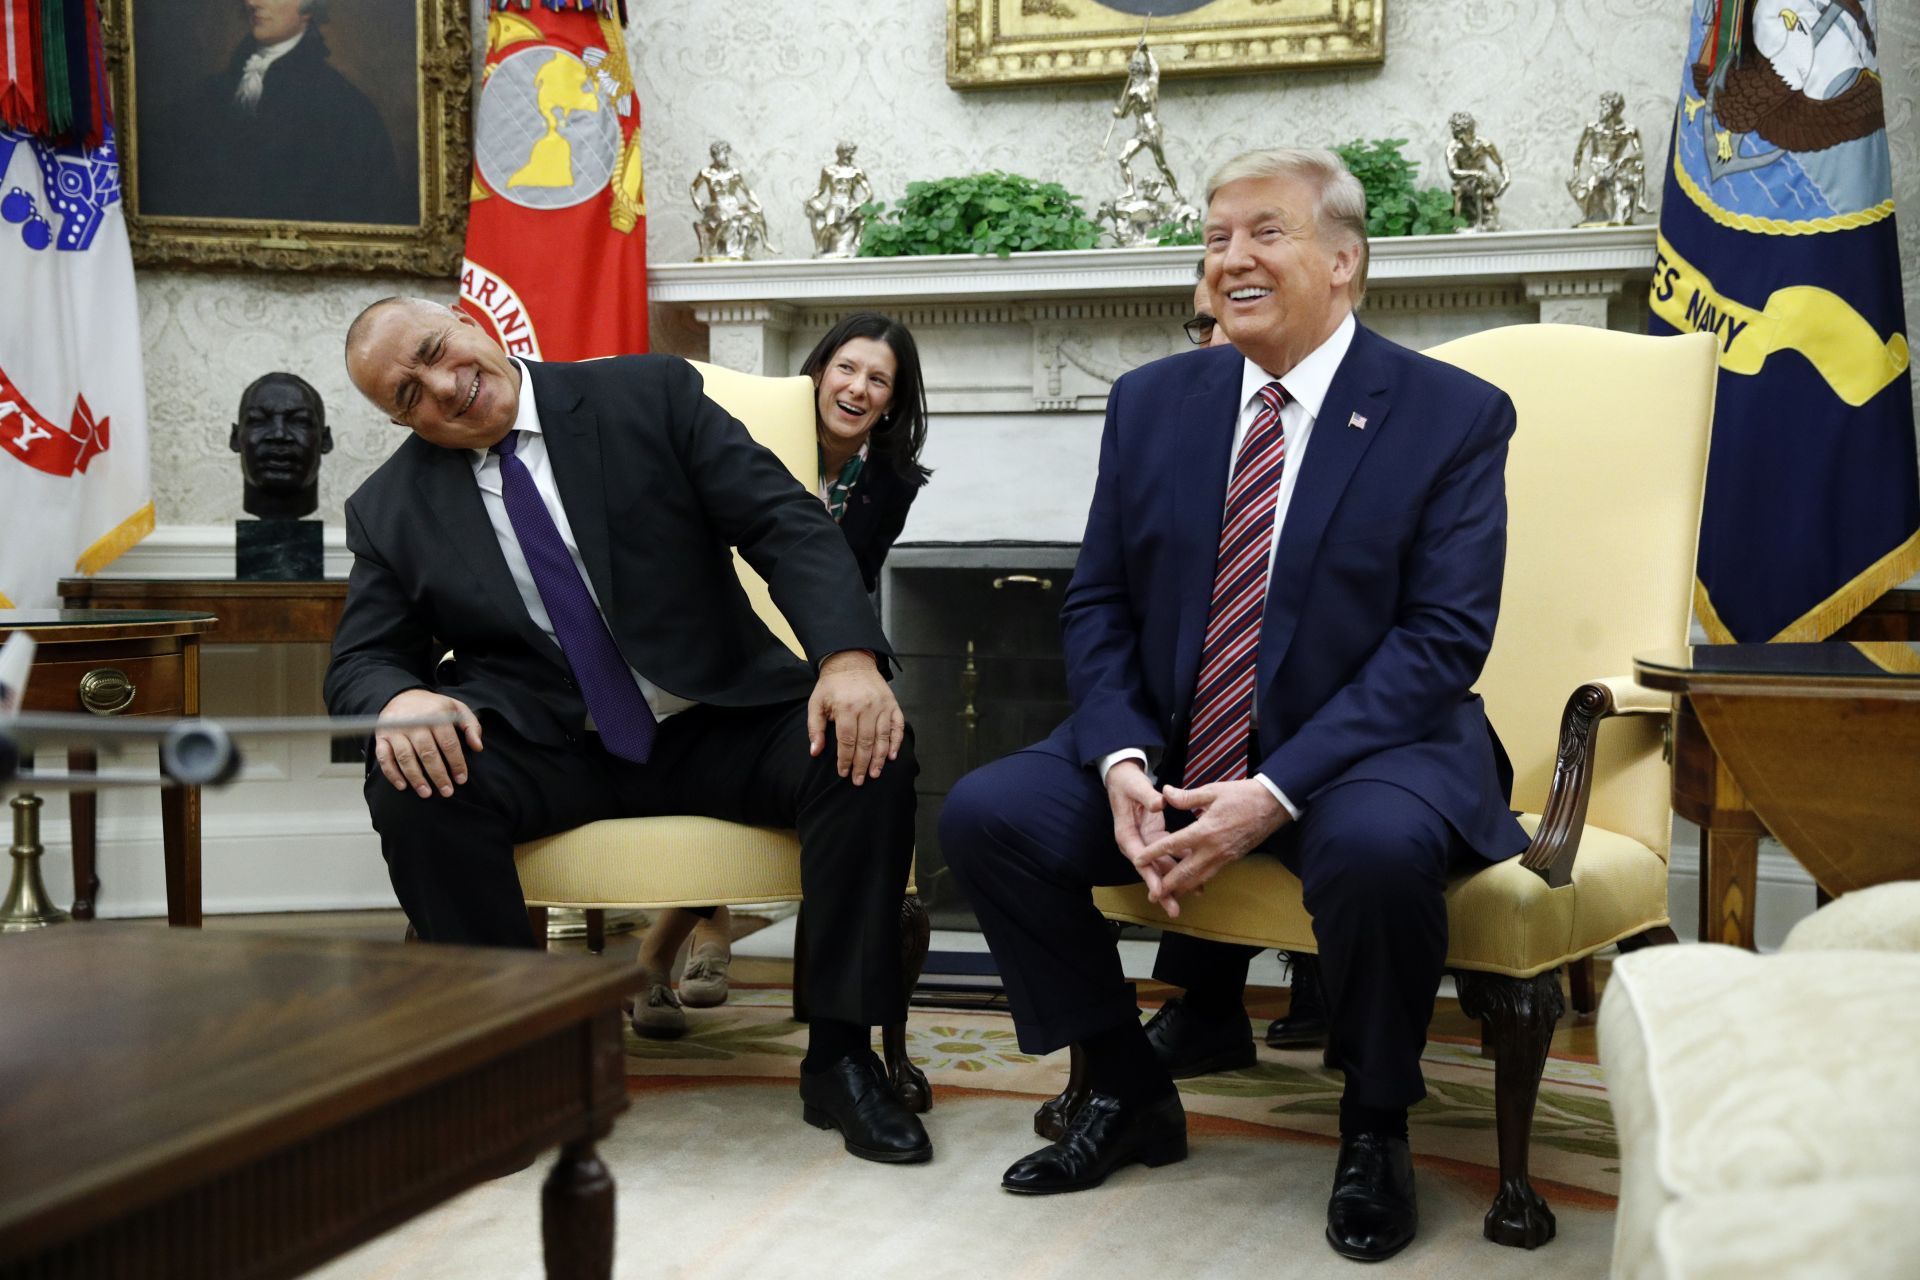 Едно от емблематичните събития на 2019 г. беше срещата на Бойко Борисов с Доналд Тръмп, на която двамата бяха във видимо добро настроение